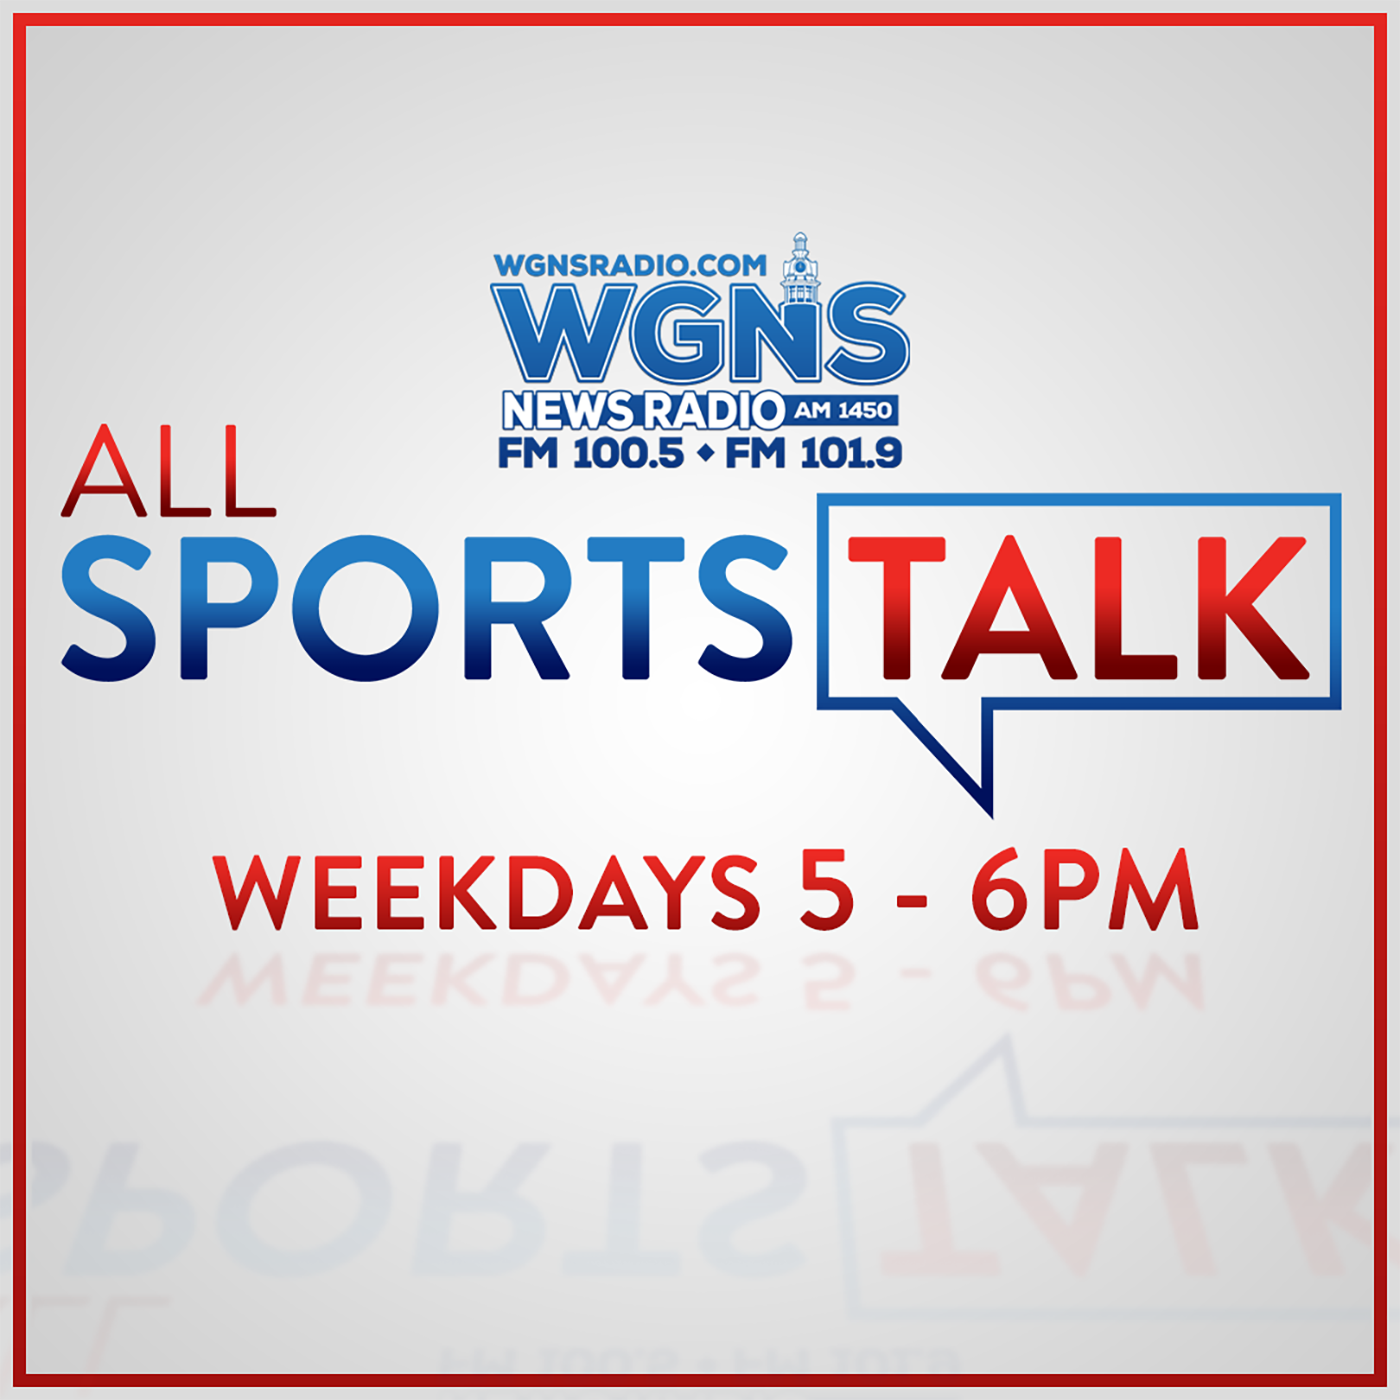 Thursday, December 17th 2020: All Sports Talk